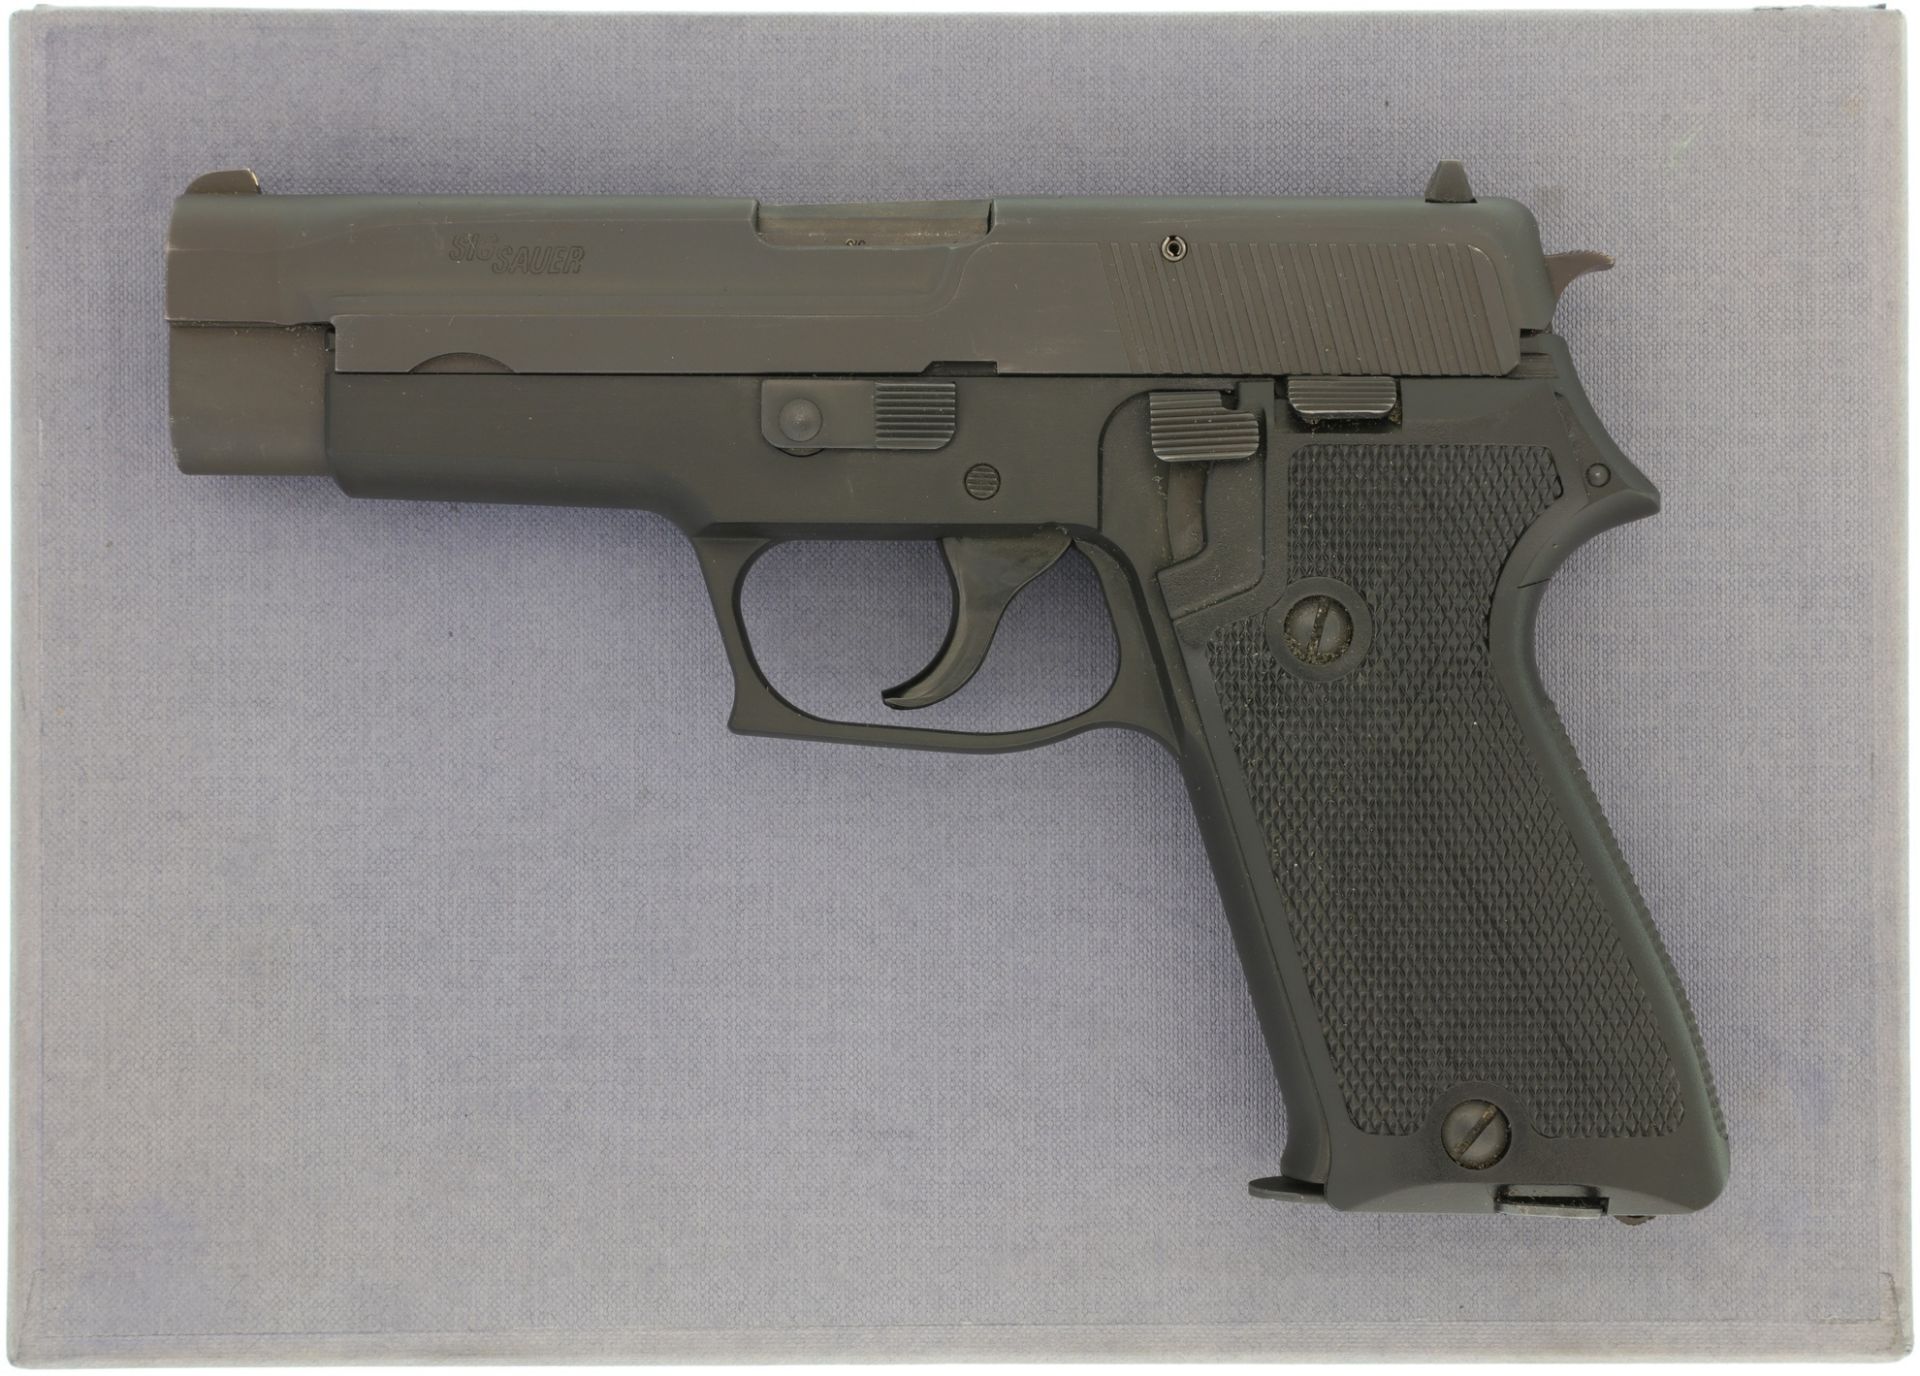 Pistole, SIG-Sauer P220, Kal. 9mmP